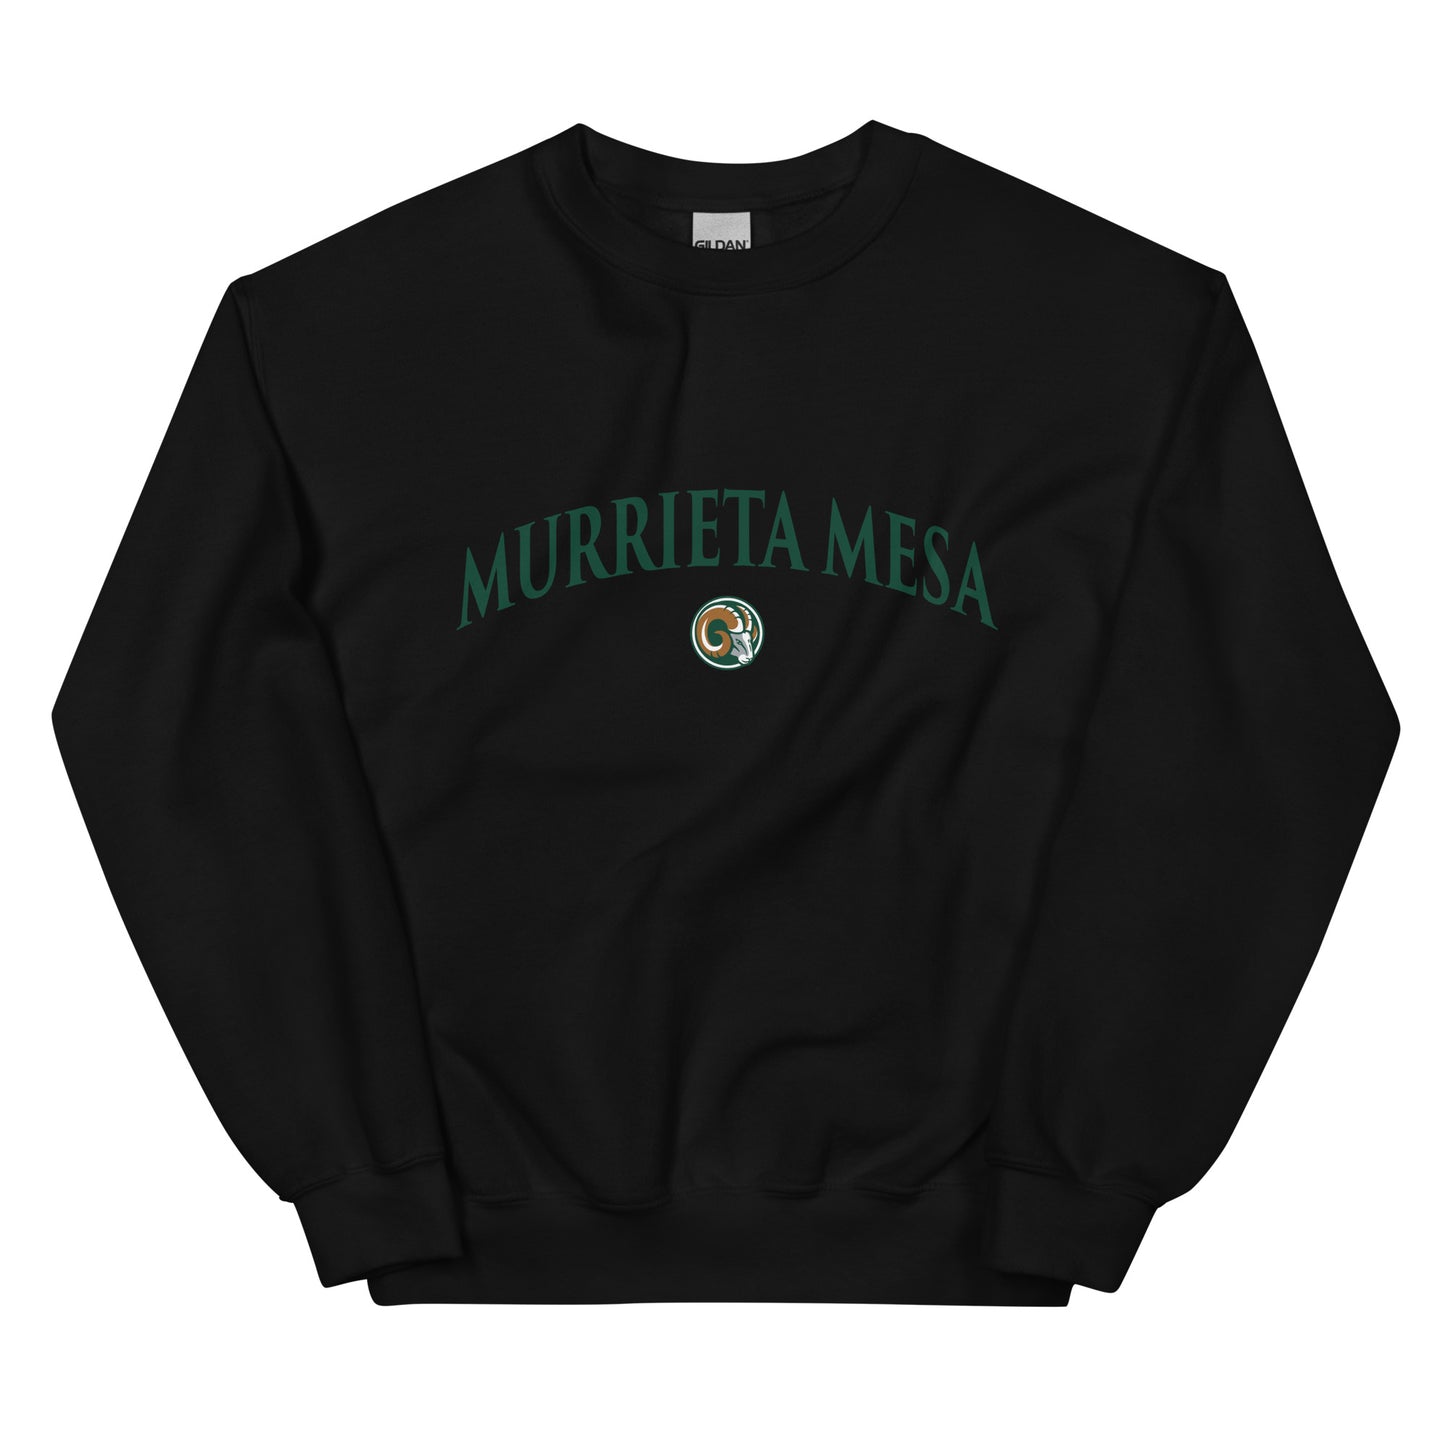 Murrieta Mesa Unisex Sweatshirt